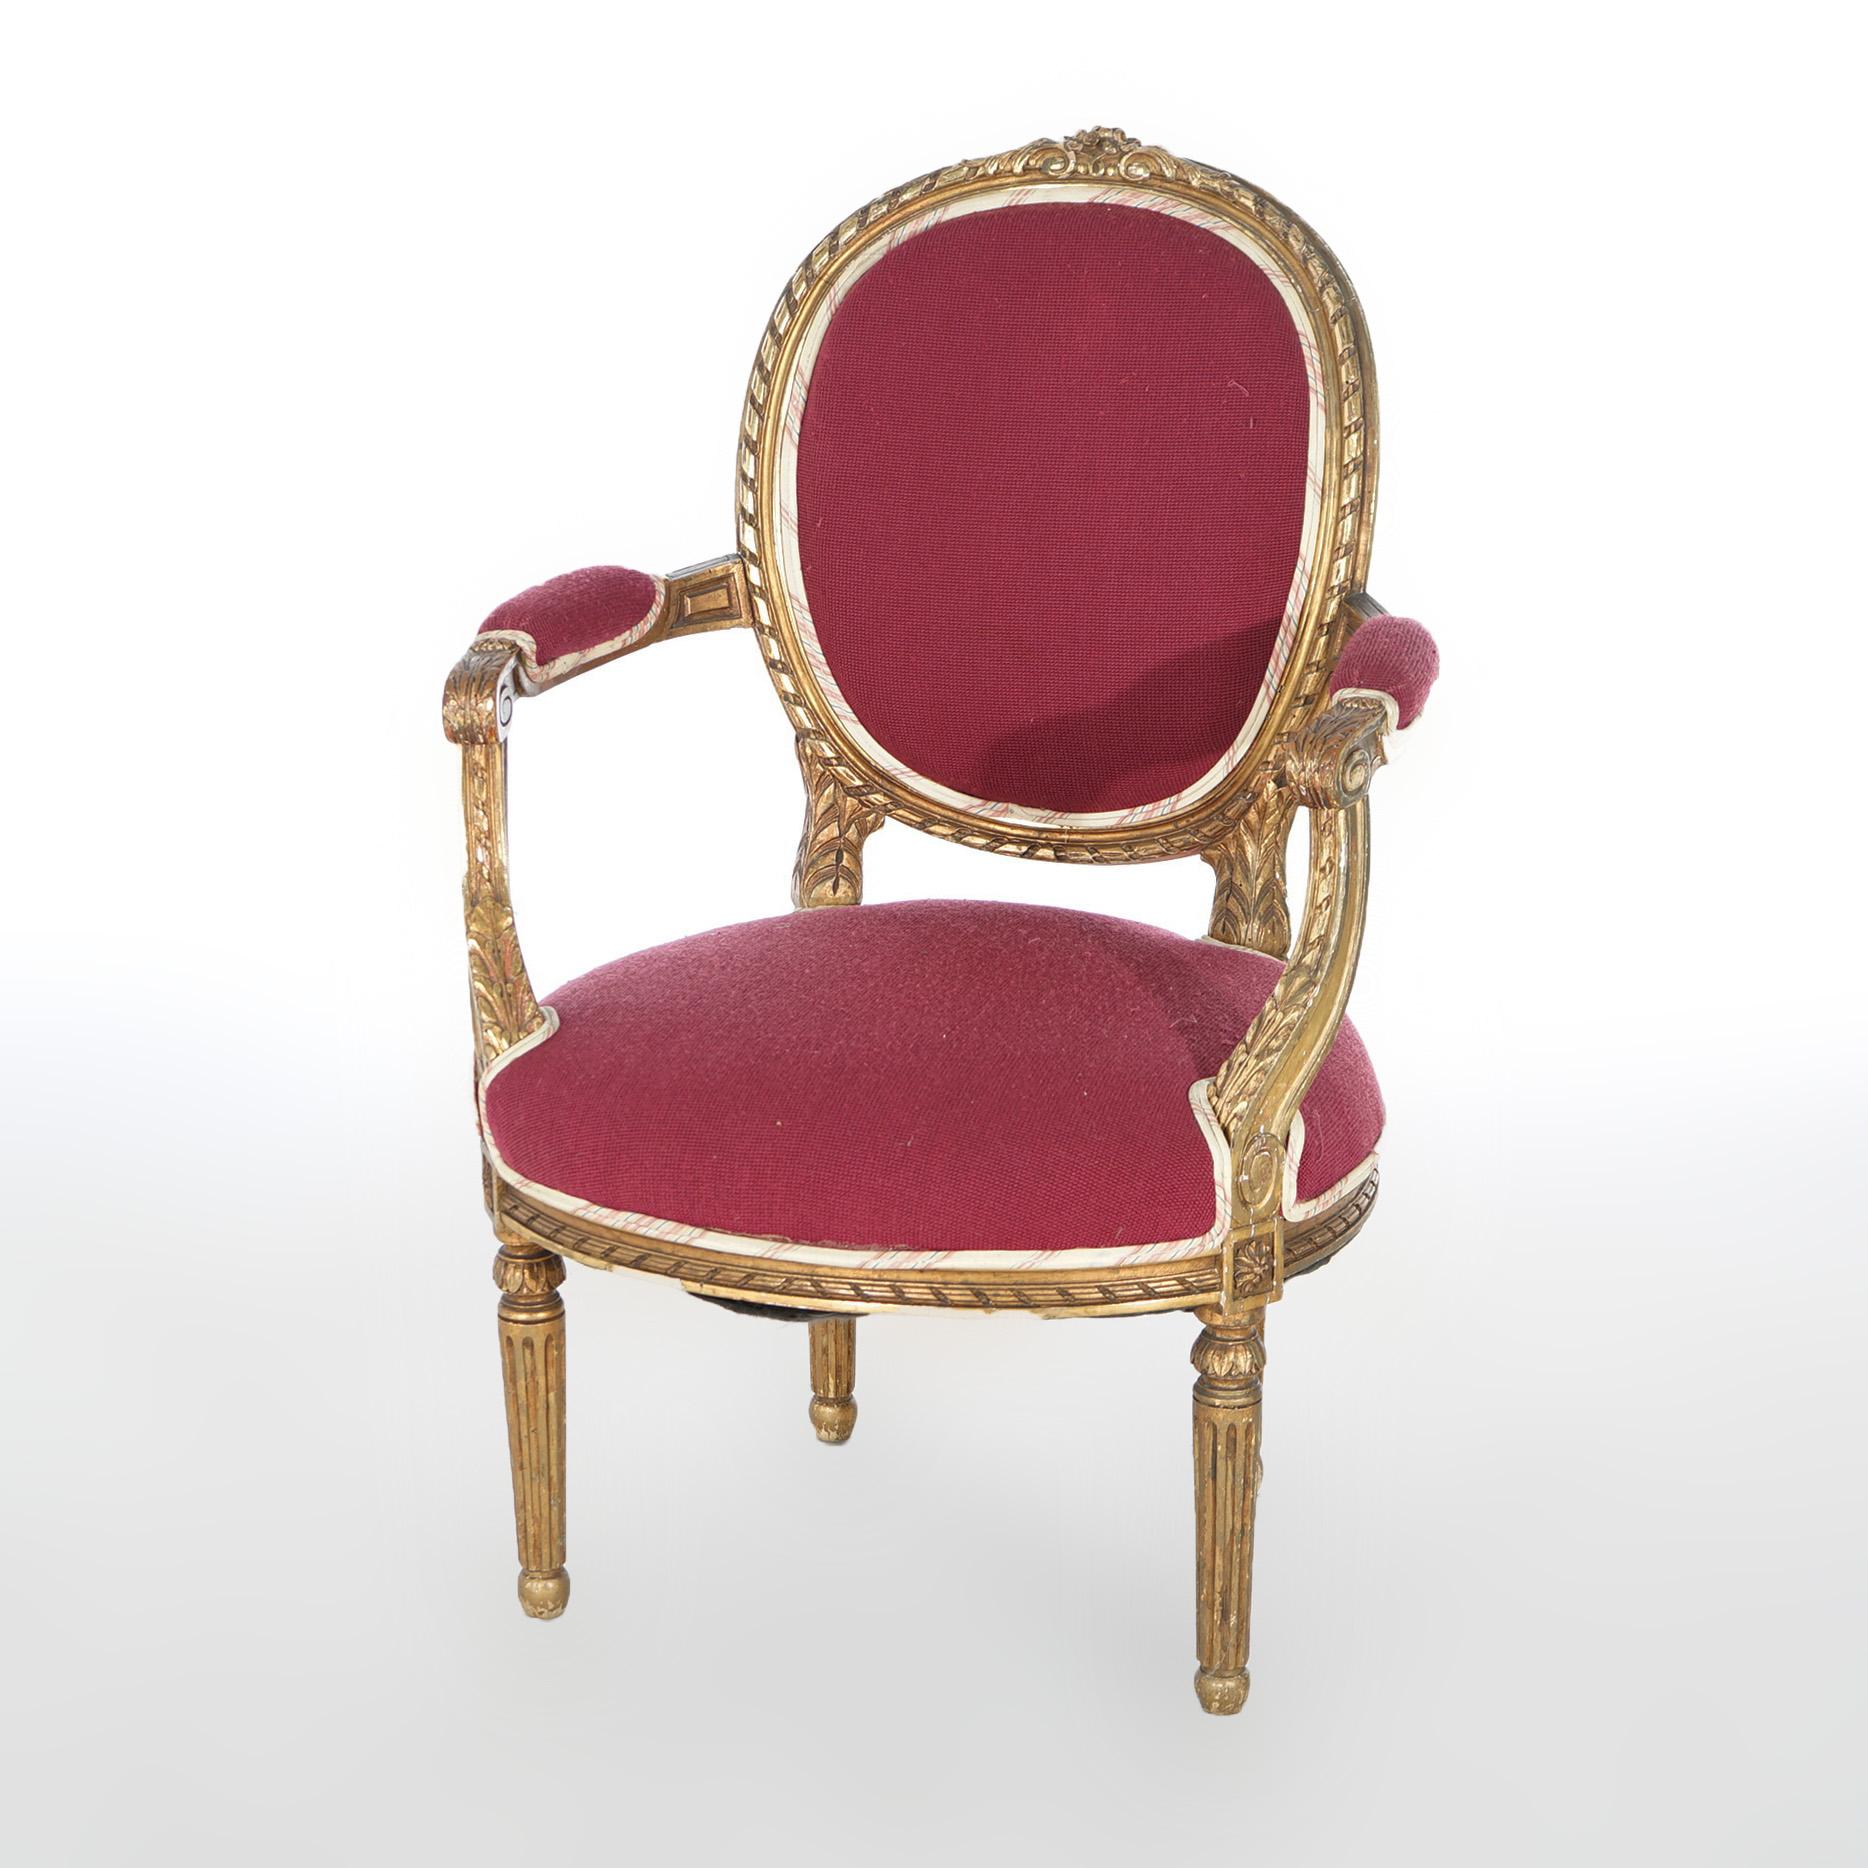 Ein antikes Paar französischer Armlehnstühle im Louis XVI-Stil bietet eine Konstruktion aus vergoldetem Holz mit gepolsterten Sitzen und Rückenlehnen, bedeckten Armlehnen in Form einer Schnecke und auf kannelierten, konischen Beinen, um 1920

Maße: